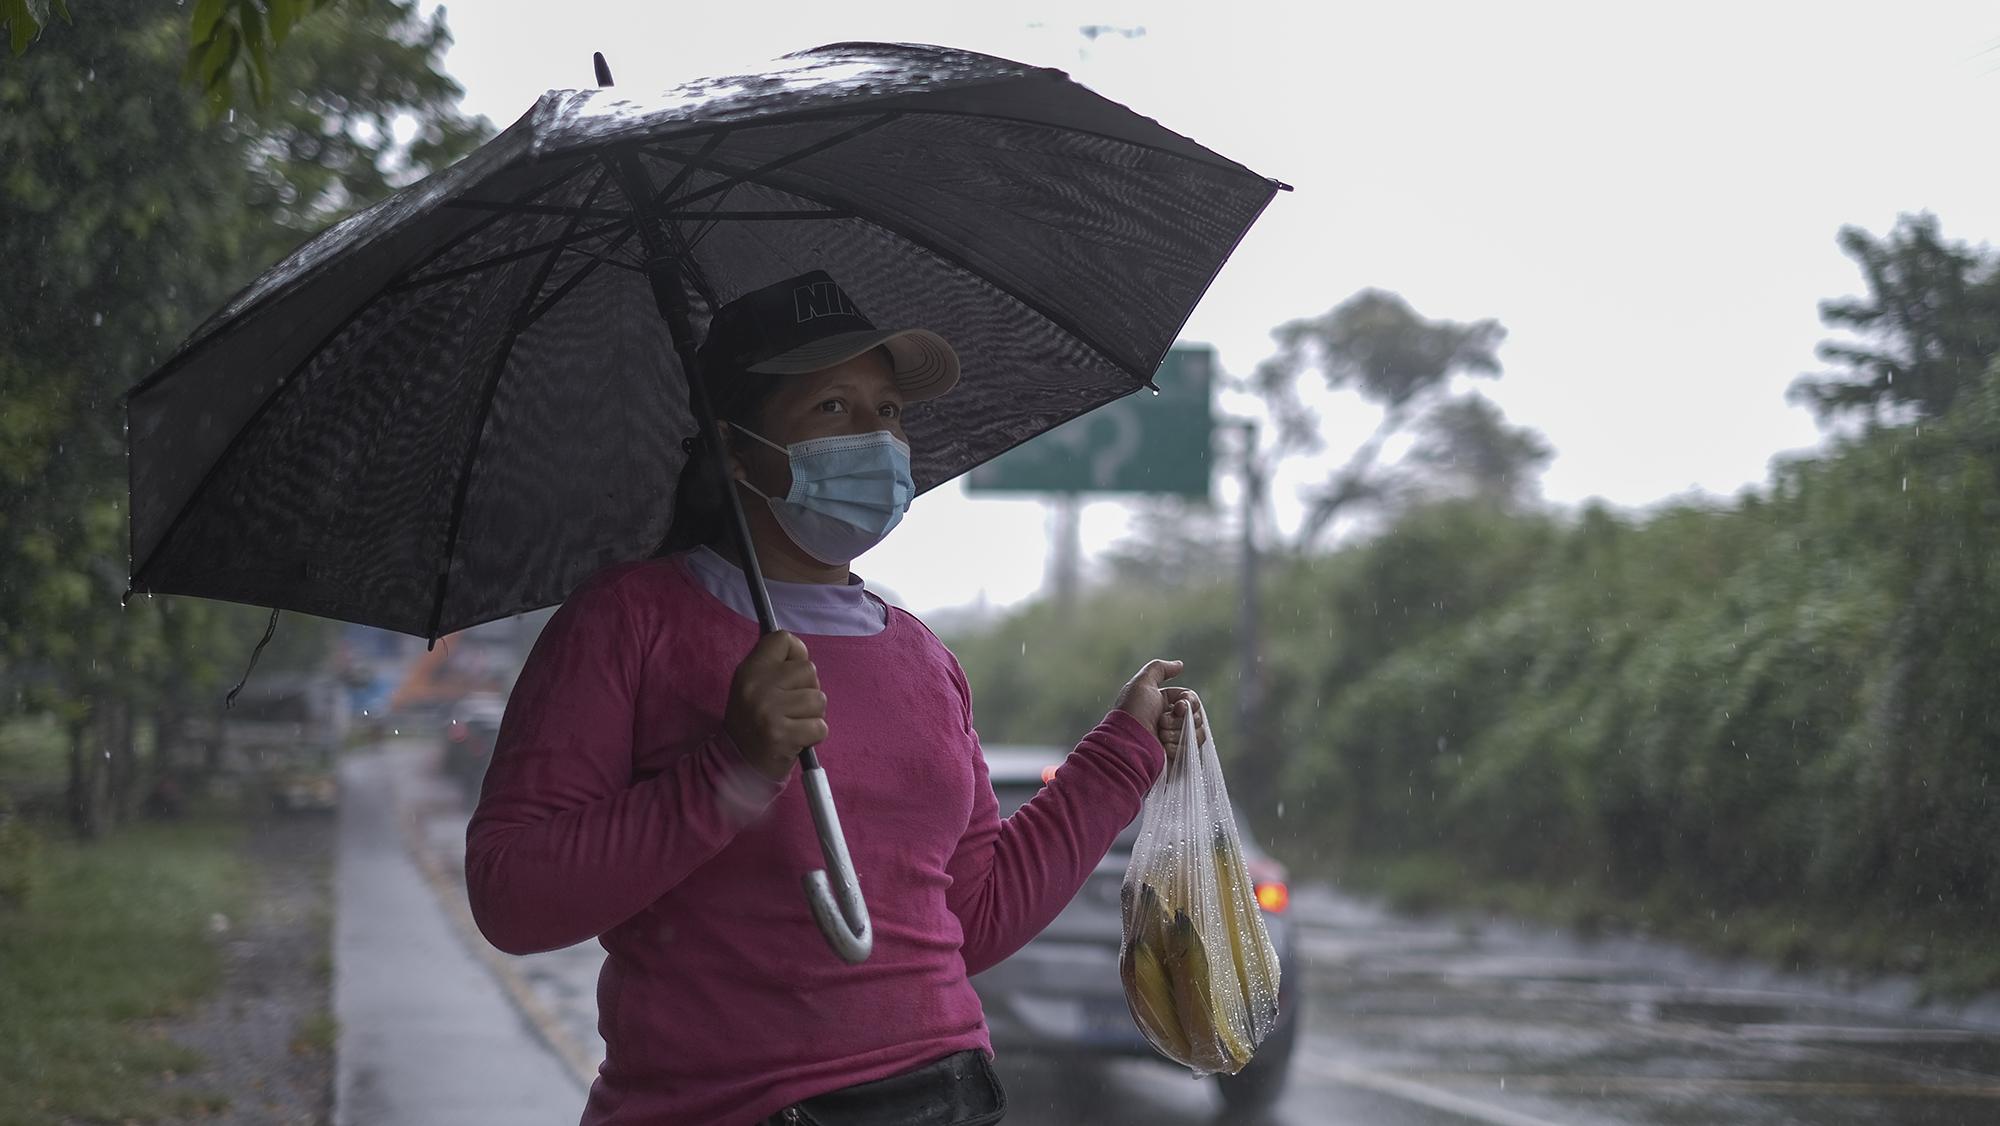 Ana Colindres de 33 años vende guineos durante una tormenta consecuencia de la entrada de Eta en Centroamérica. Ana lleva dos años vendiendo en el mismo lugar junto a Mirna Mazariego quien le provee de las frutas para poder generar ingresos para su familia.